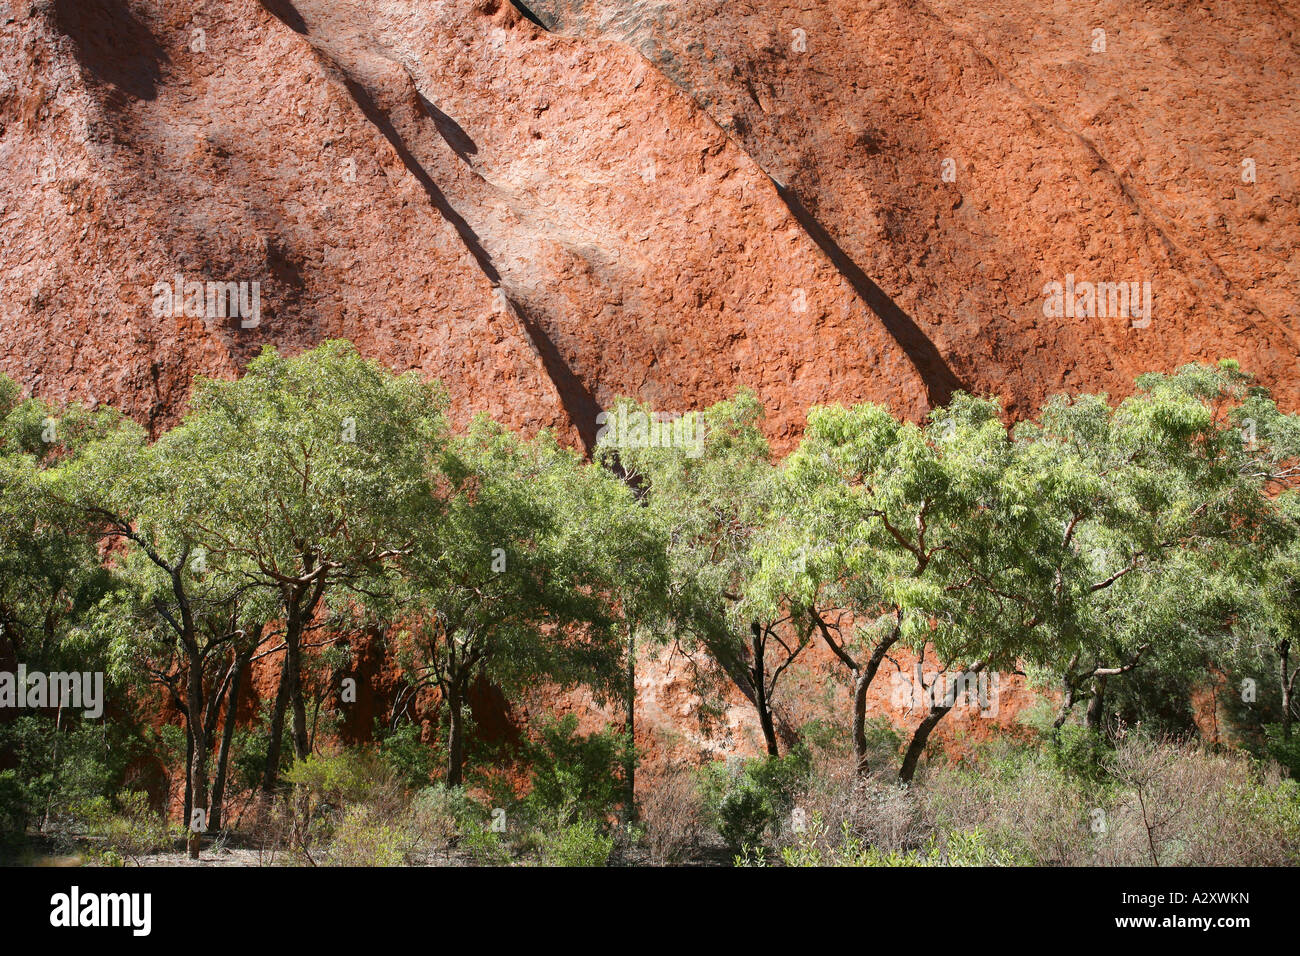 Ayers Rock - uluru - Territoire du Nord - Australie Banque D'Images